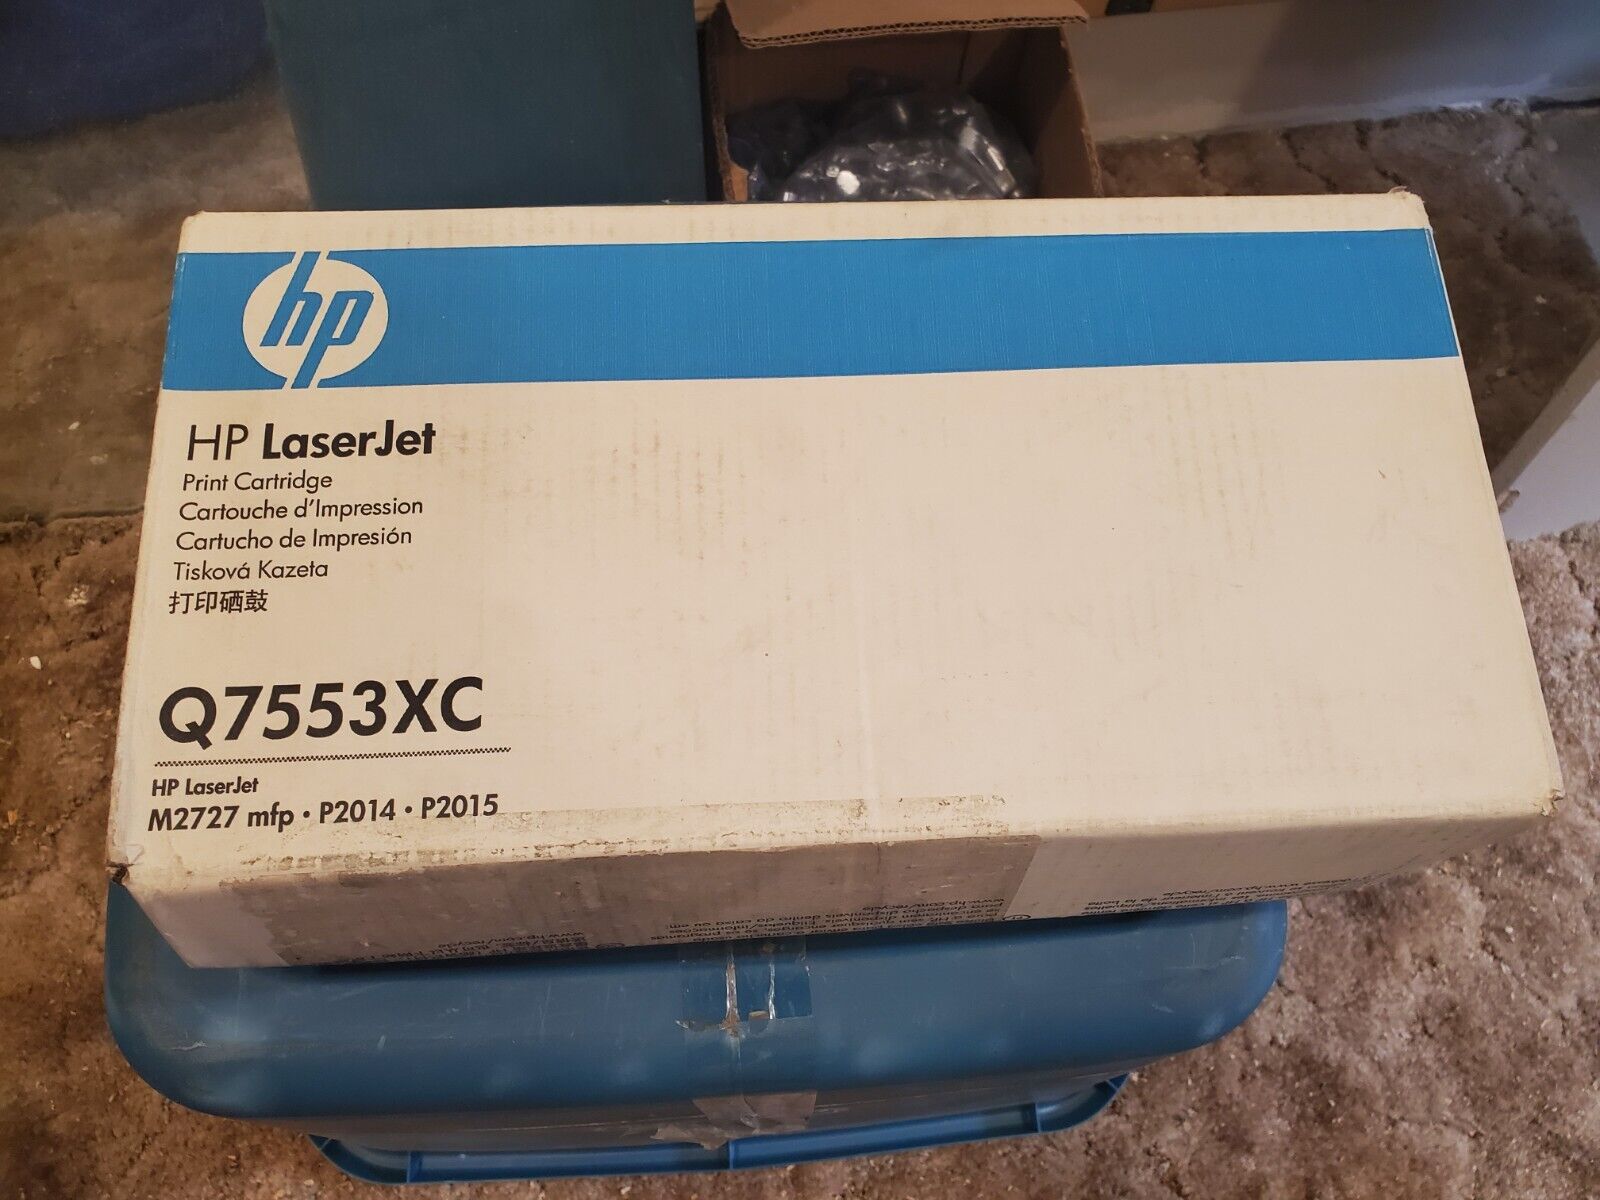 New OEM HP Laserjet Q7553XC Print Cartridge Toner M2727 P2014 P2015 - Sealed